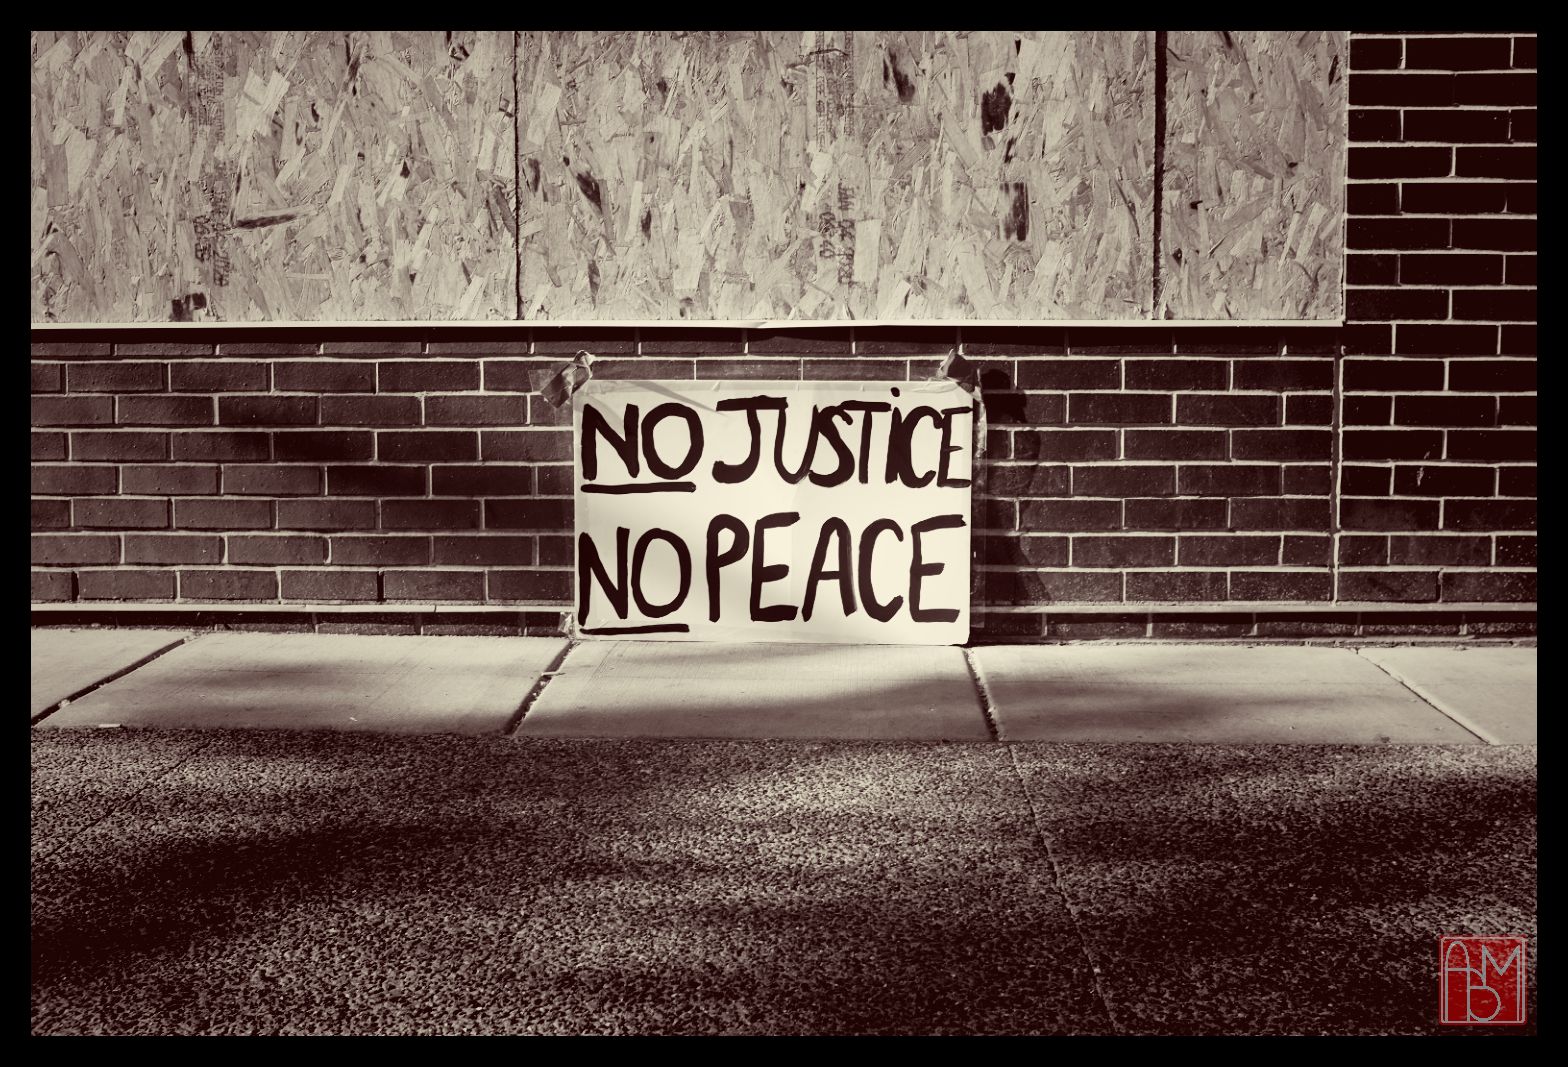 No justice, no peace.